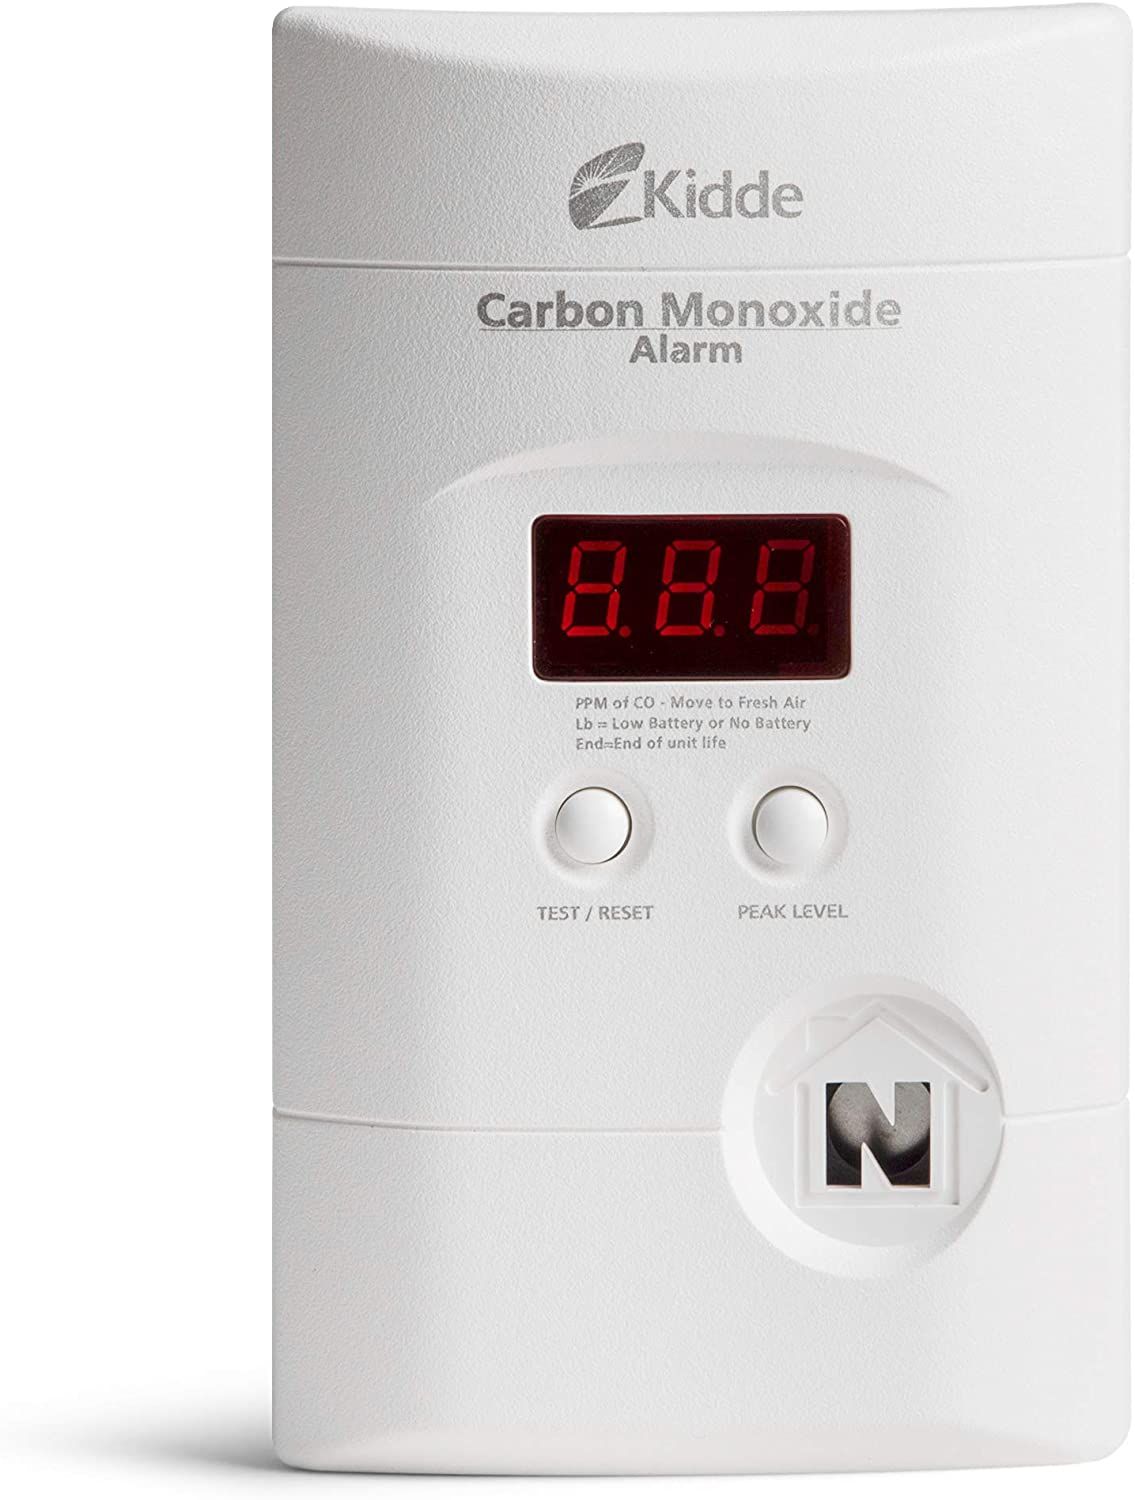 Best Carbon Monoxide Detectors Updated 2020 1548